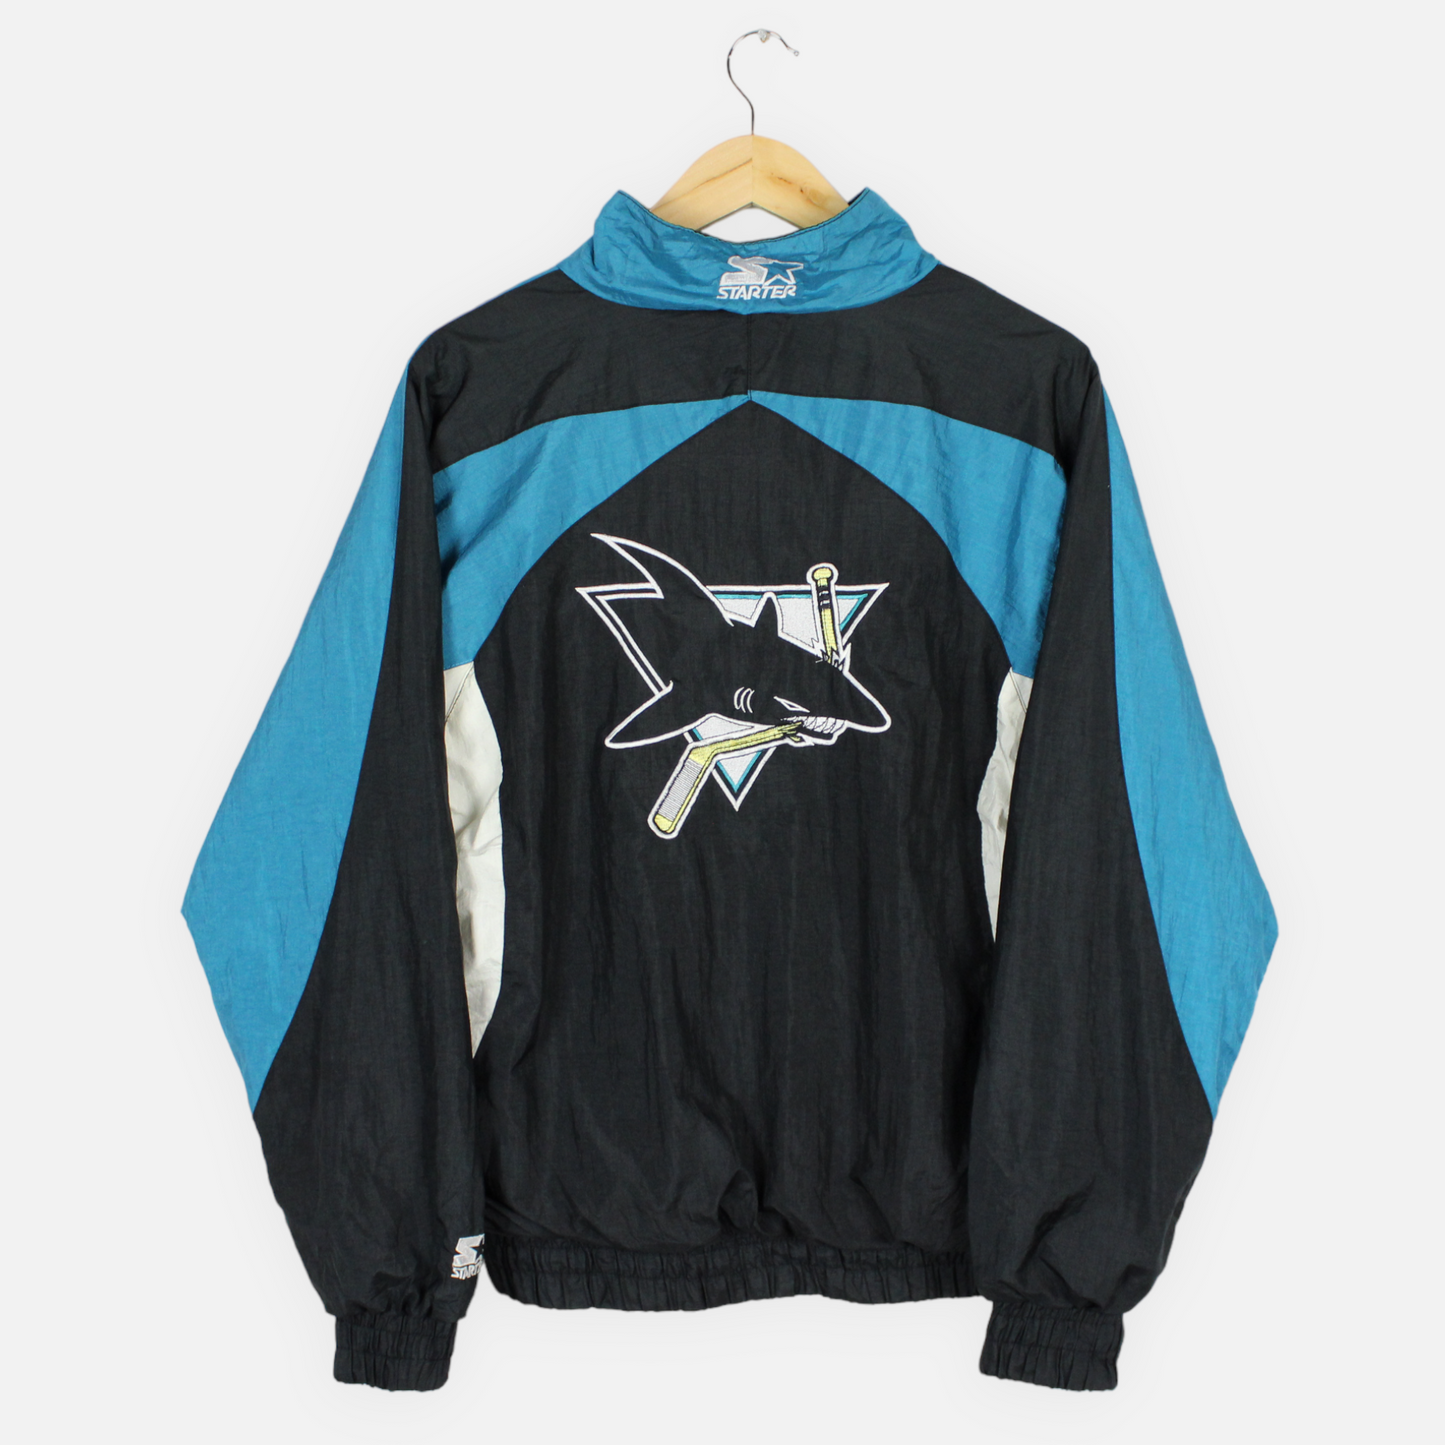 Vintage San Jose Sharks NHL Starter Jacket - M